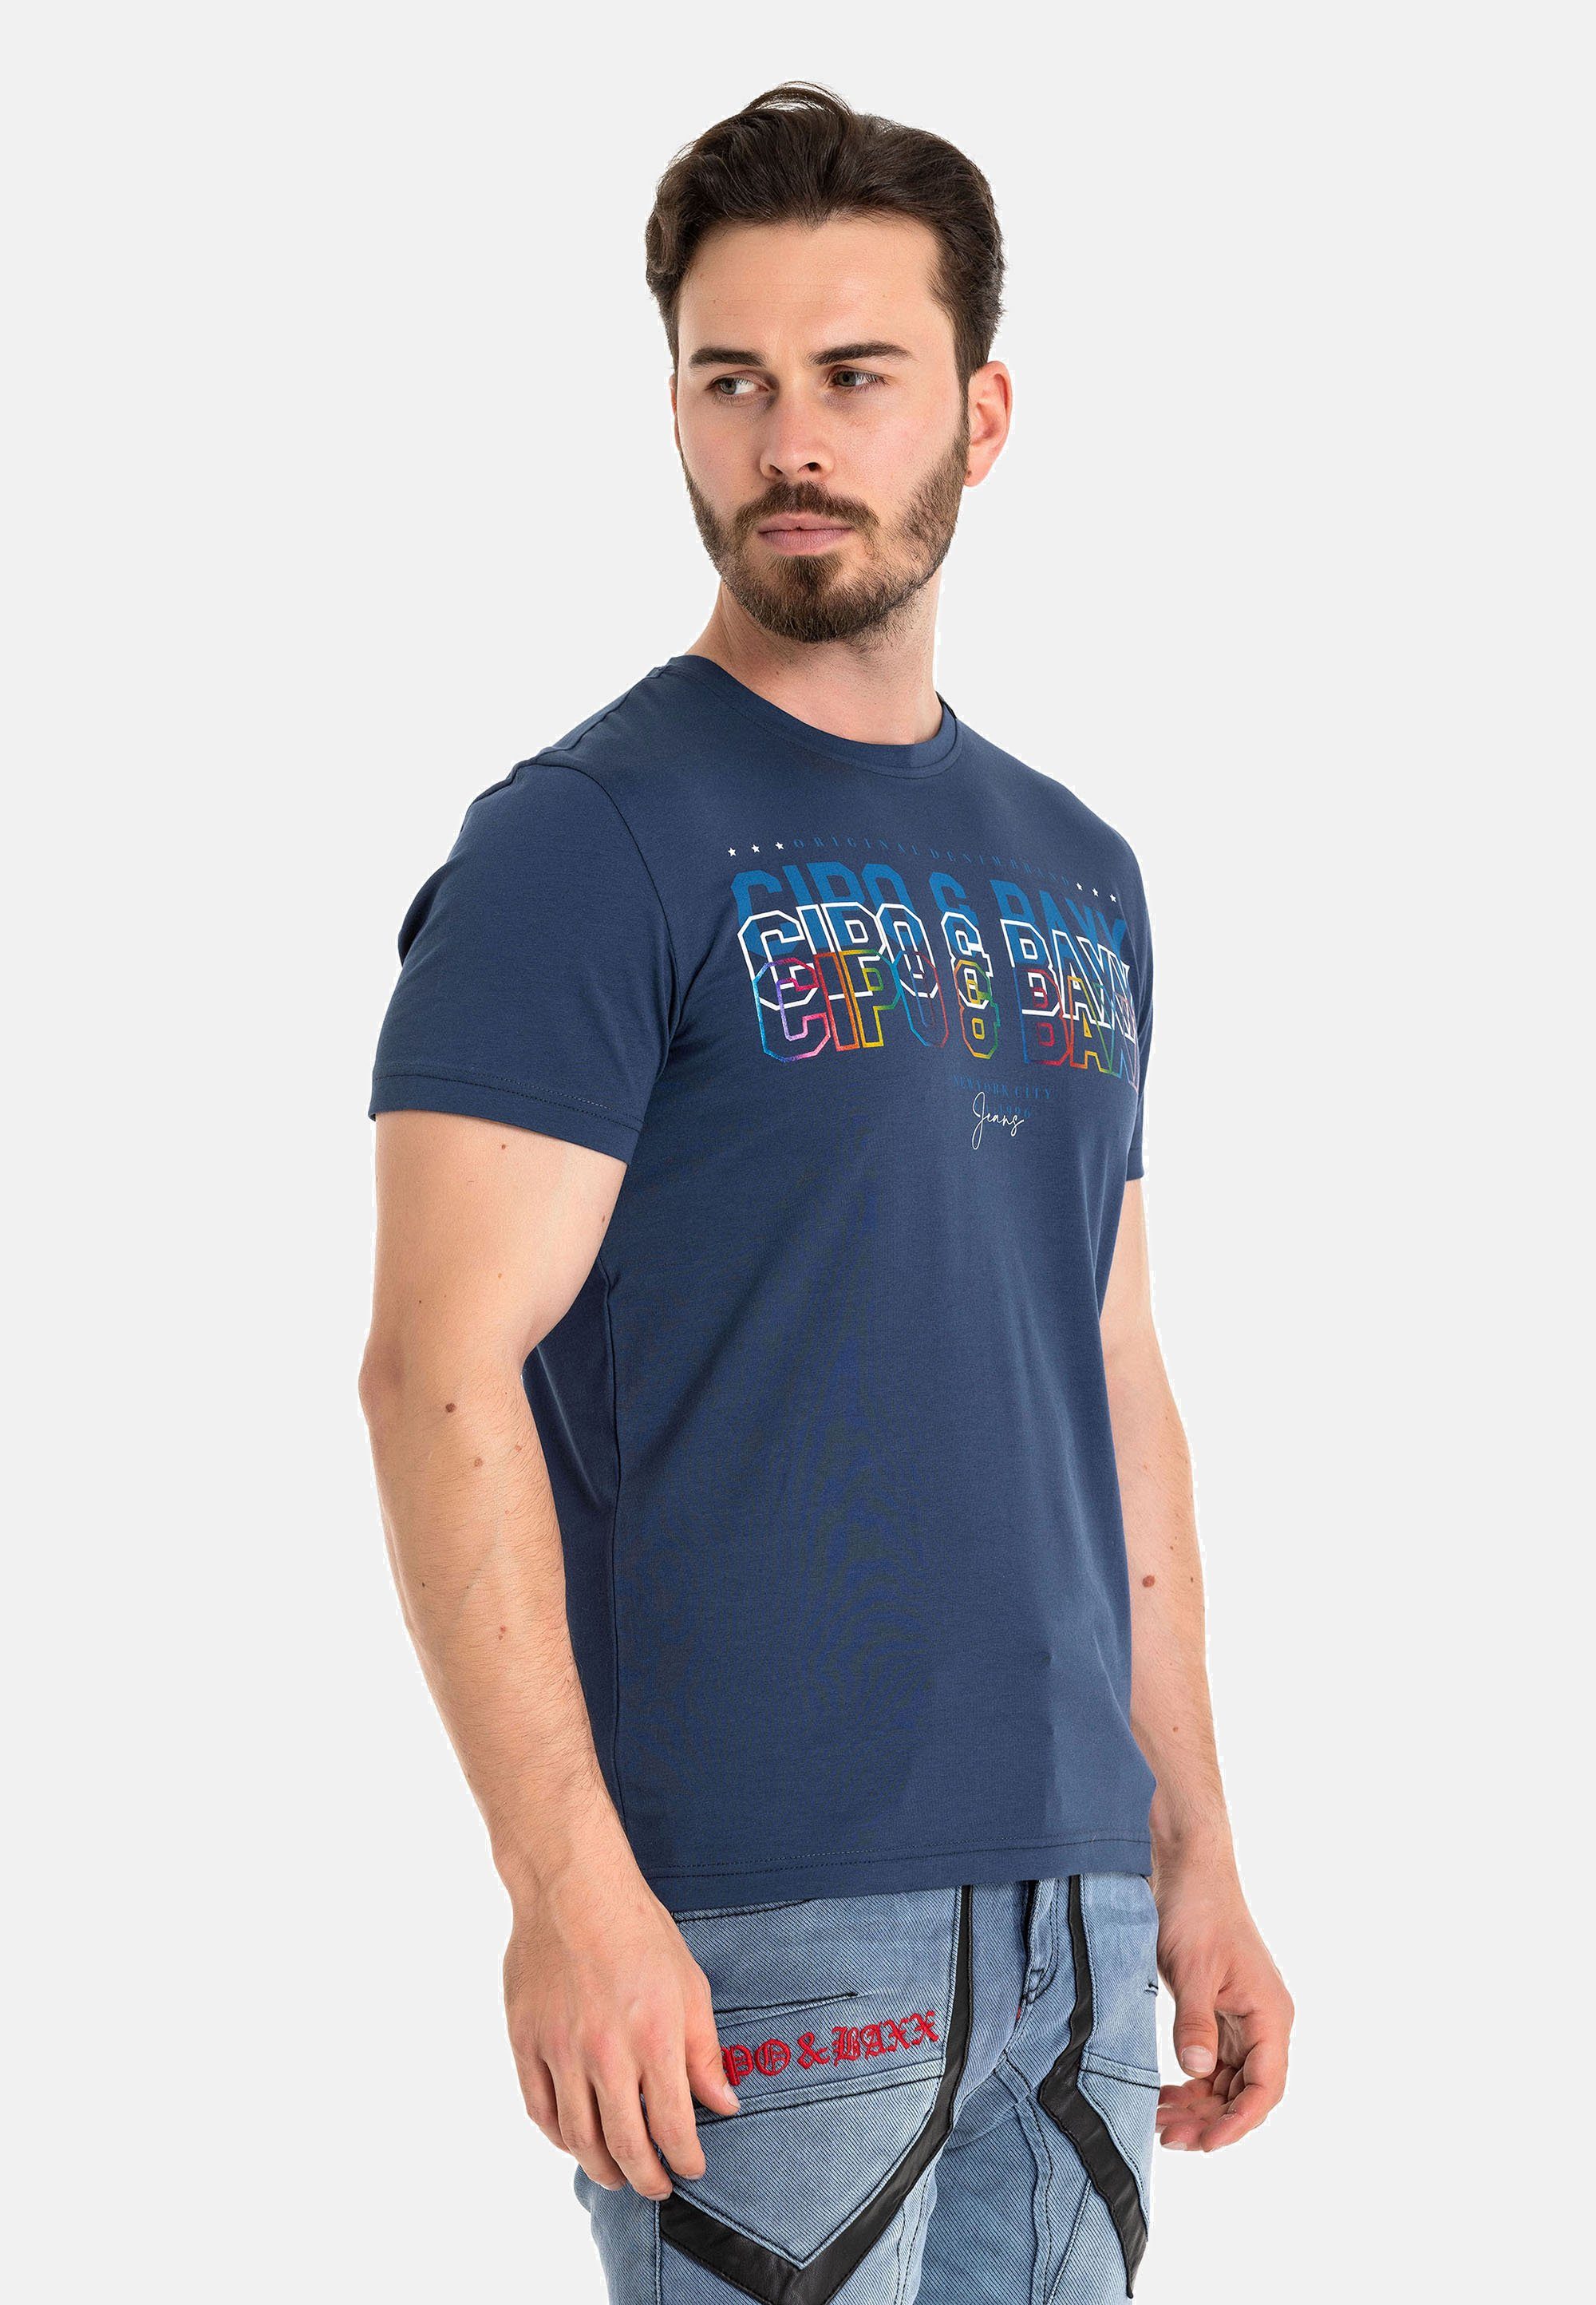 & blau Markenprint CT717 Cipo trendigem mit Baxx T-Shirt